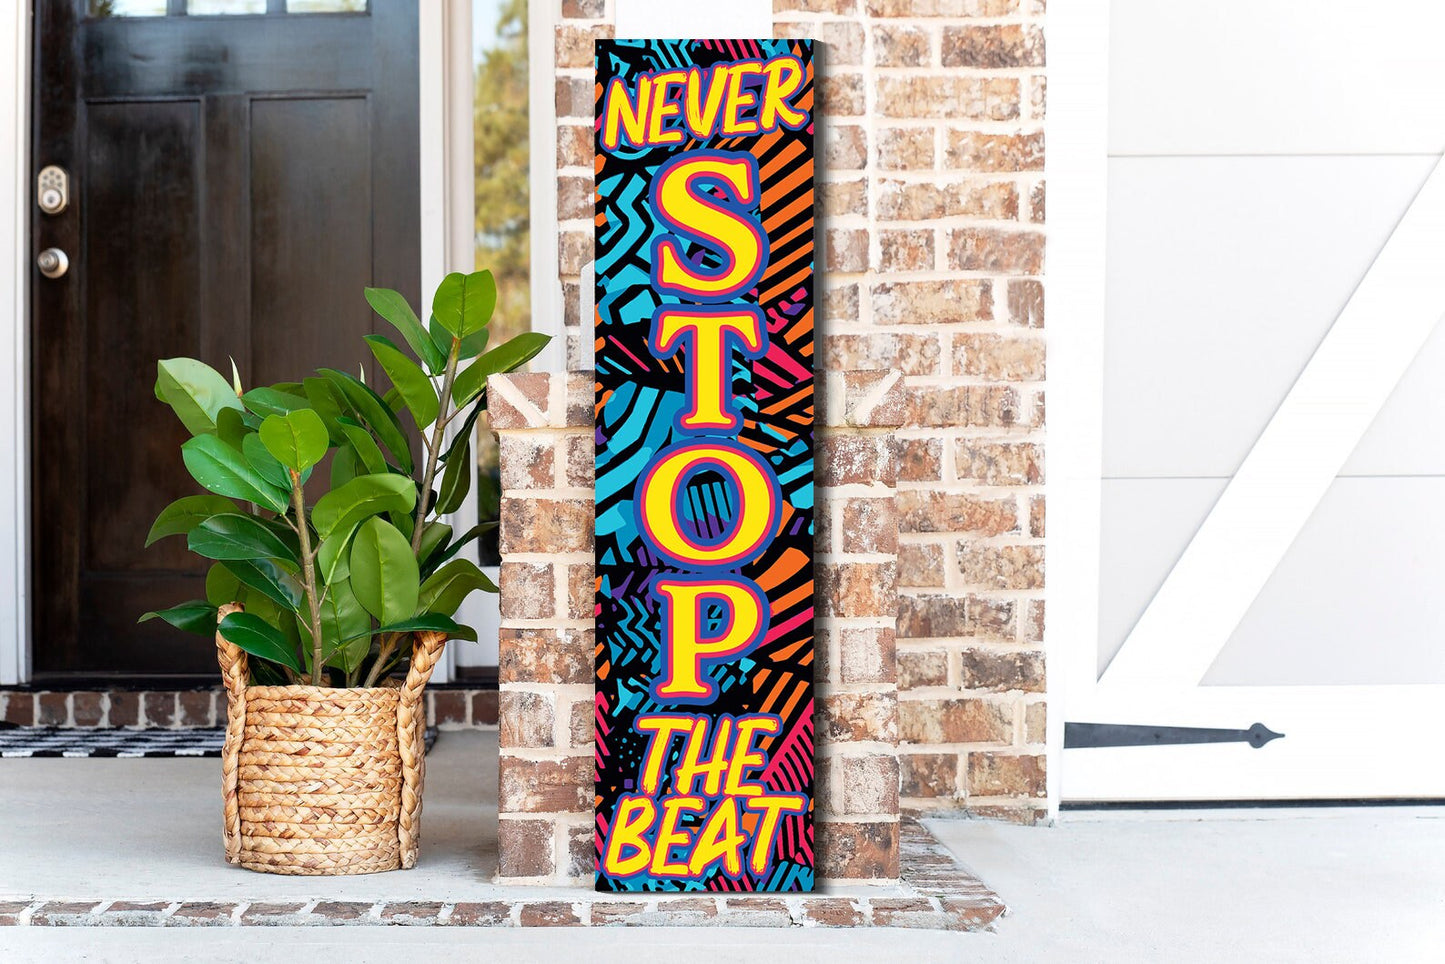 36In Wooden "Never Stop The Beat" Decor Sign For Front Door And Indoor Display Fun Door Sign